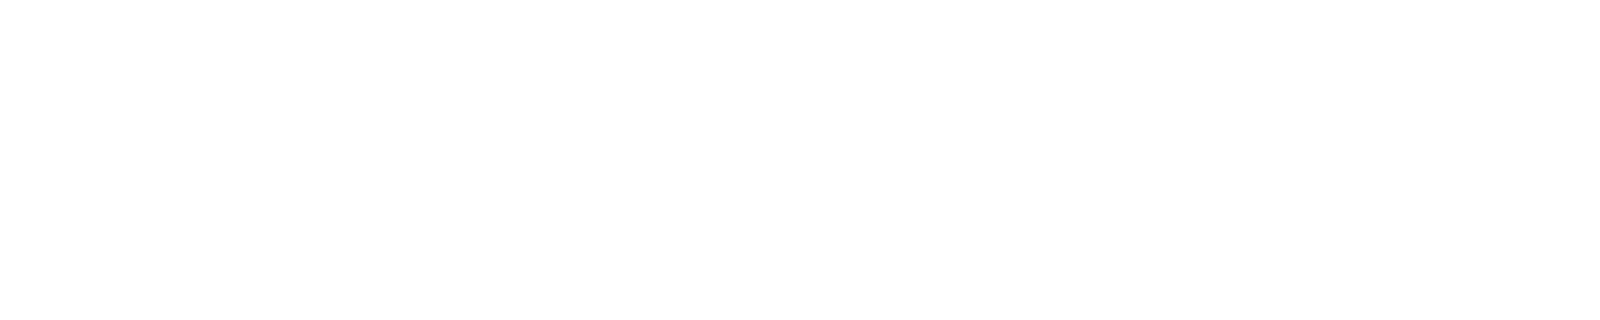 Rivian Logo groß für dunkle Hintergründe (transparentes PNG)